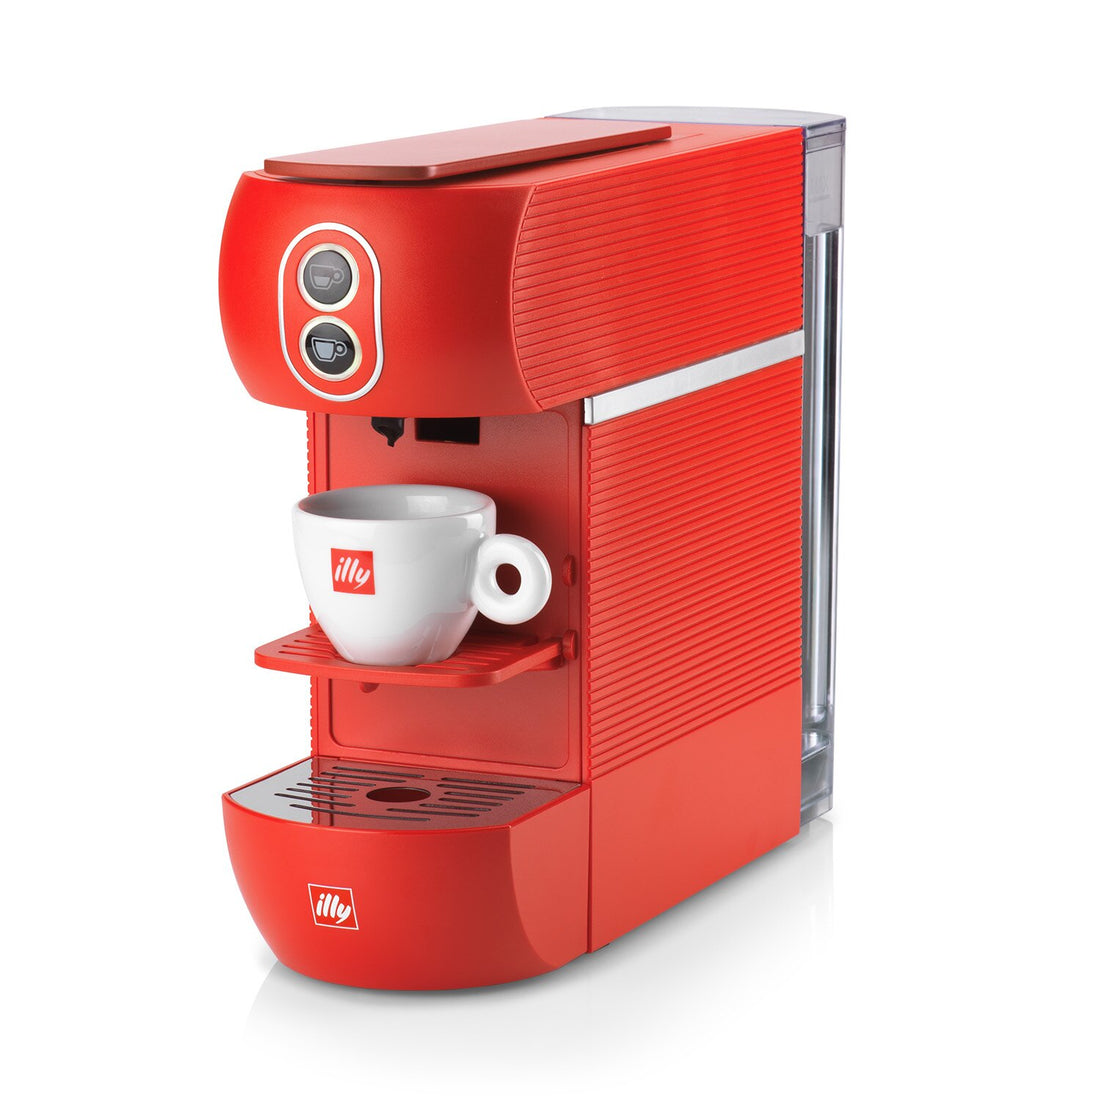 Illy E.S.E. Pod Coffee Machine - Red